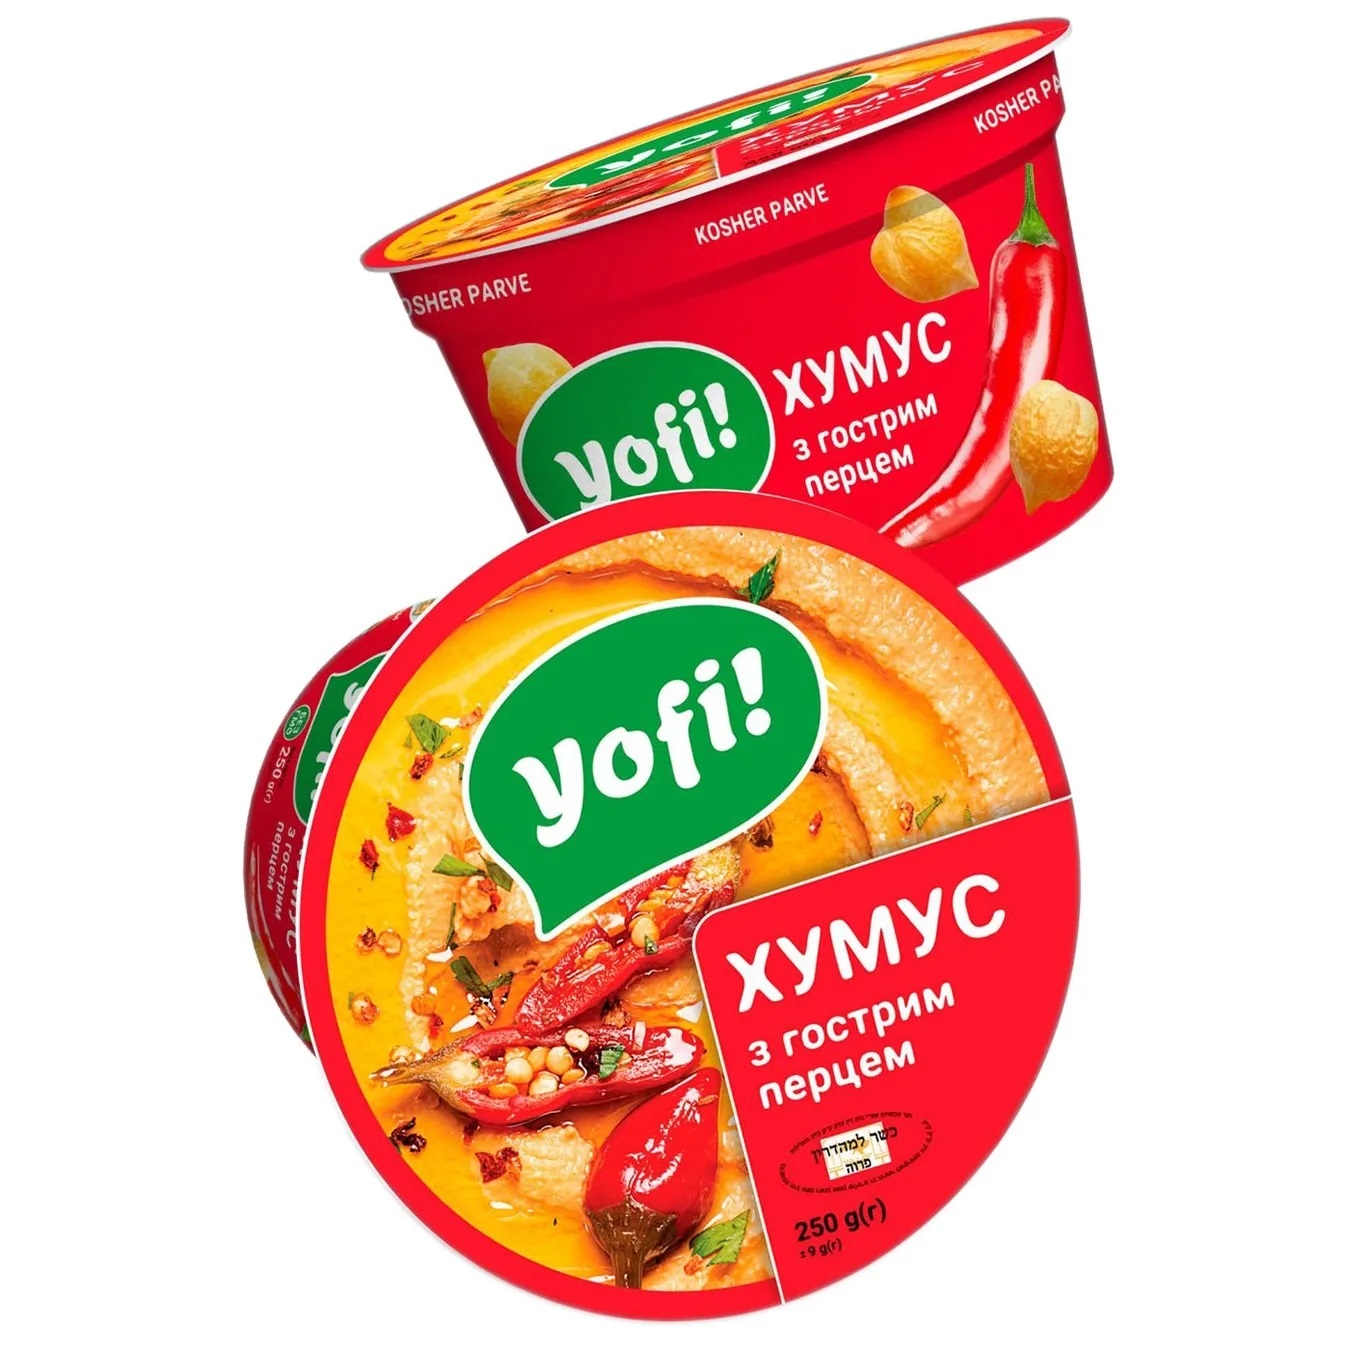 Хумус Yofi! с острым перцем 250г 2